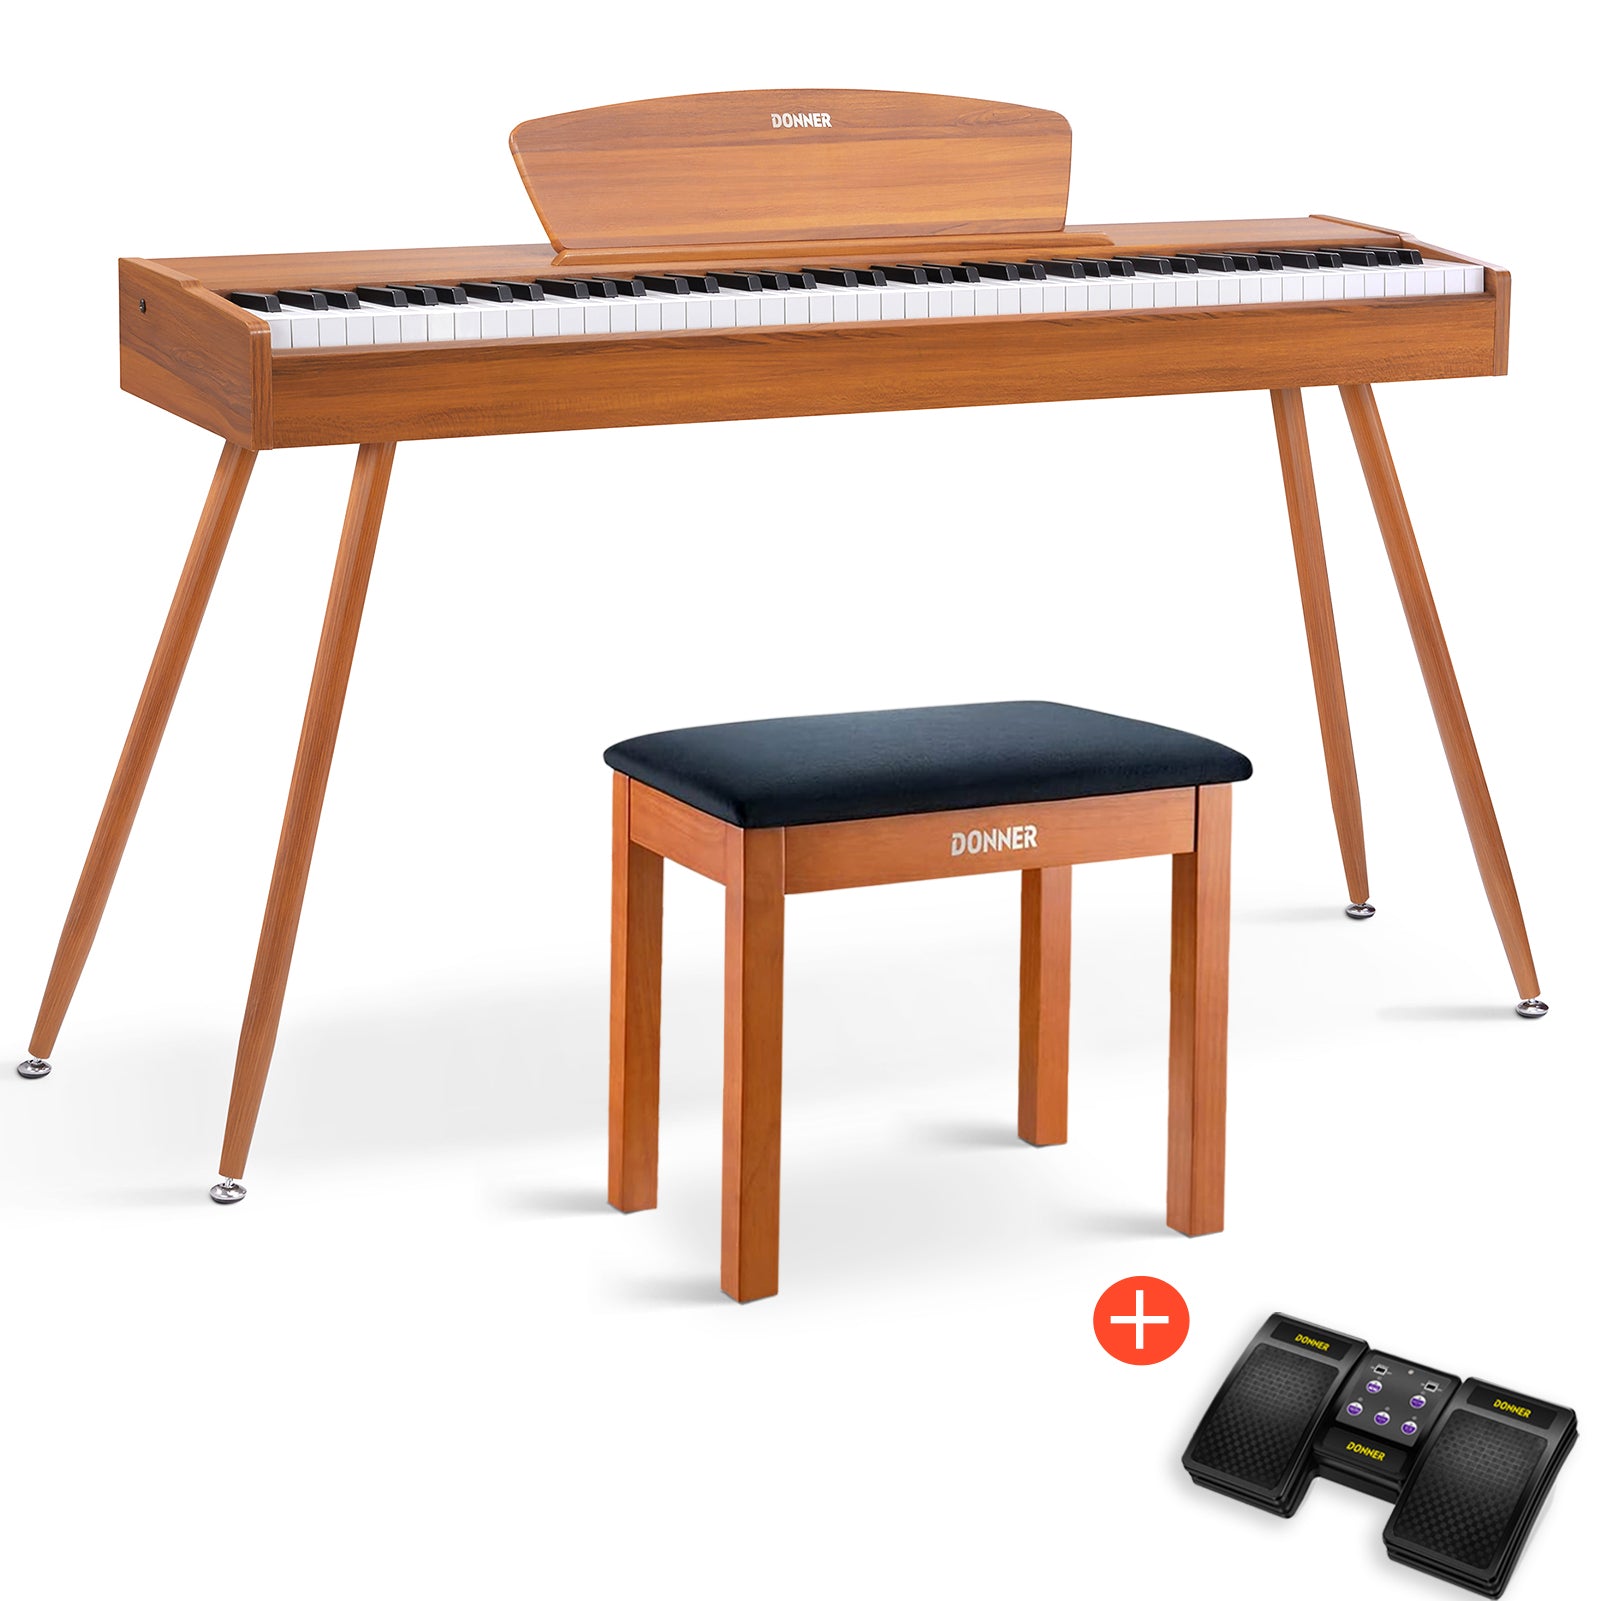 Donner DDP-80 Digital-Piano für Zuhause 88 gewichtete Tasten & Stilvolles Holzdesign mit 3 Pedale - Natürlich / Piano + Hölzerner Klavierbank + Page Turner von Donner